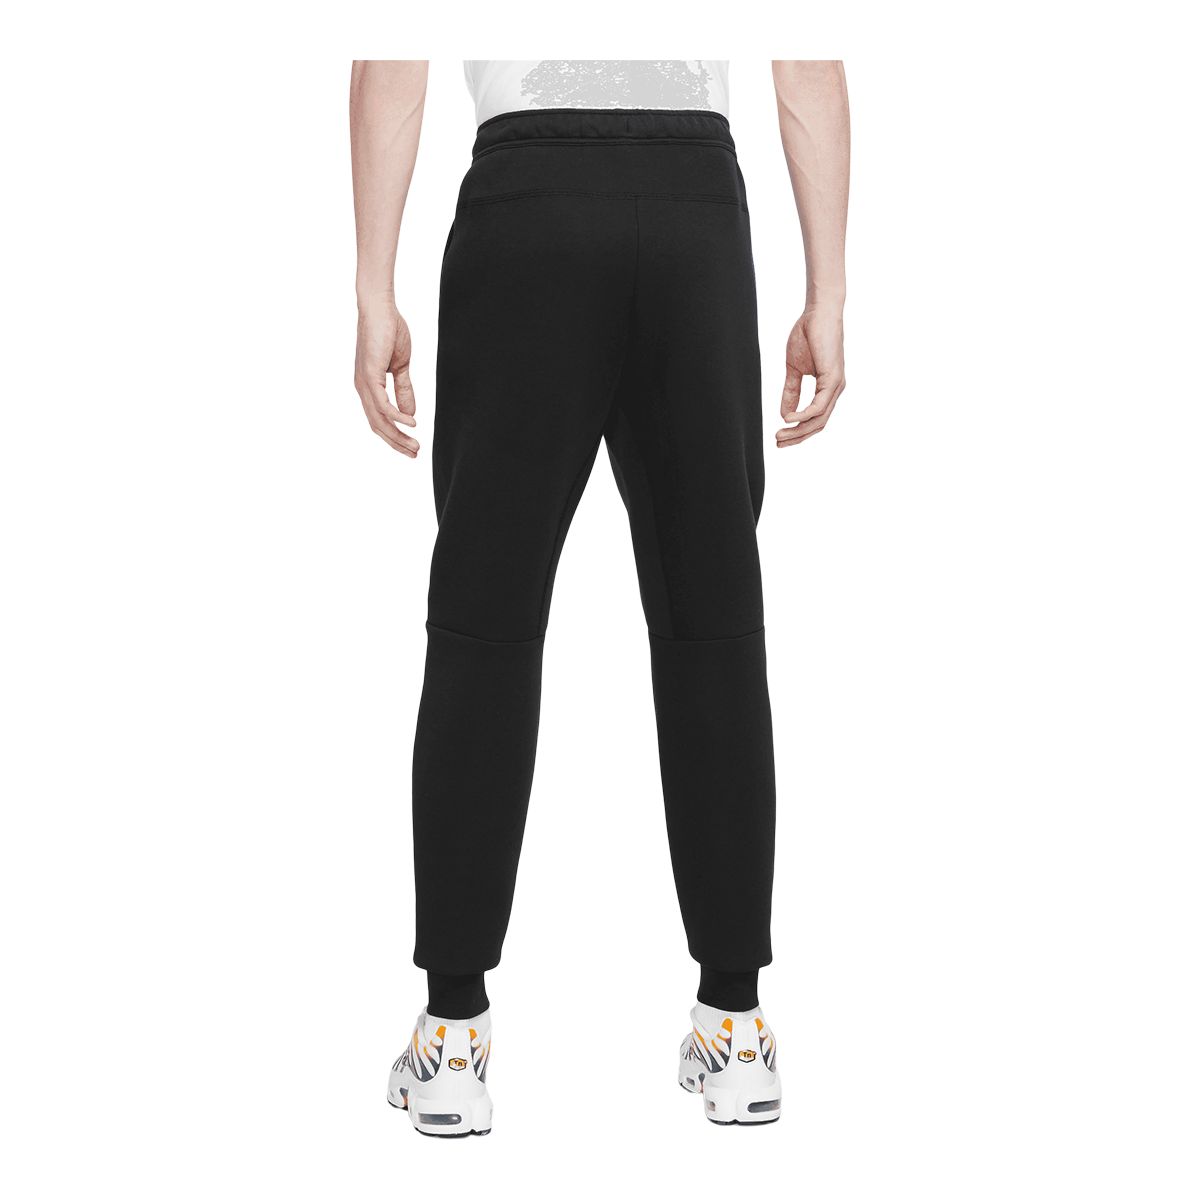 Grey Nike Tech Fleece Track Pants